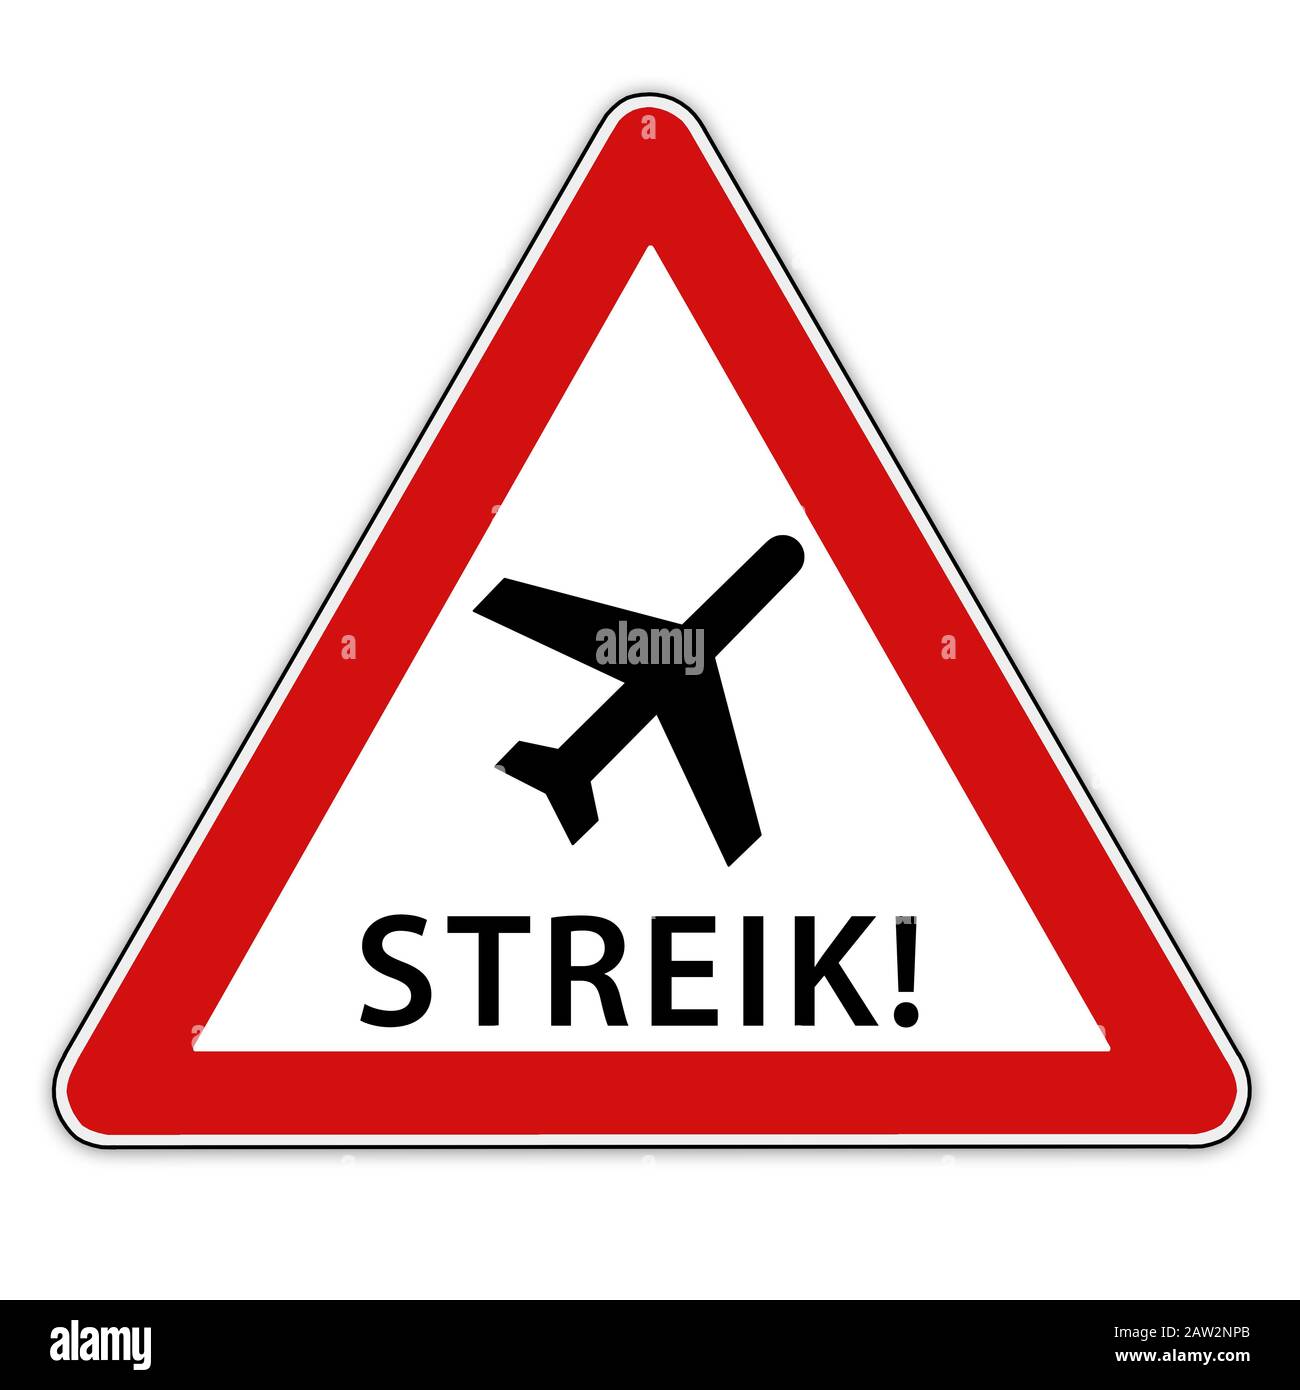 Isoliertes rot-weißes Verkehrszeichen mit Flugzeug symbolisch für Streik - in deutscher Sprache Stockfoto